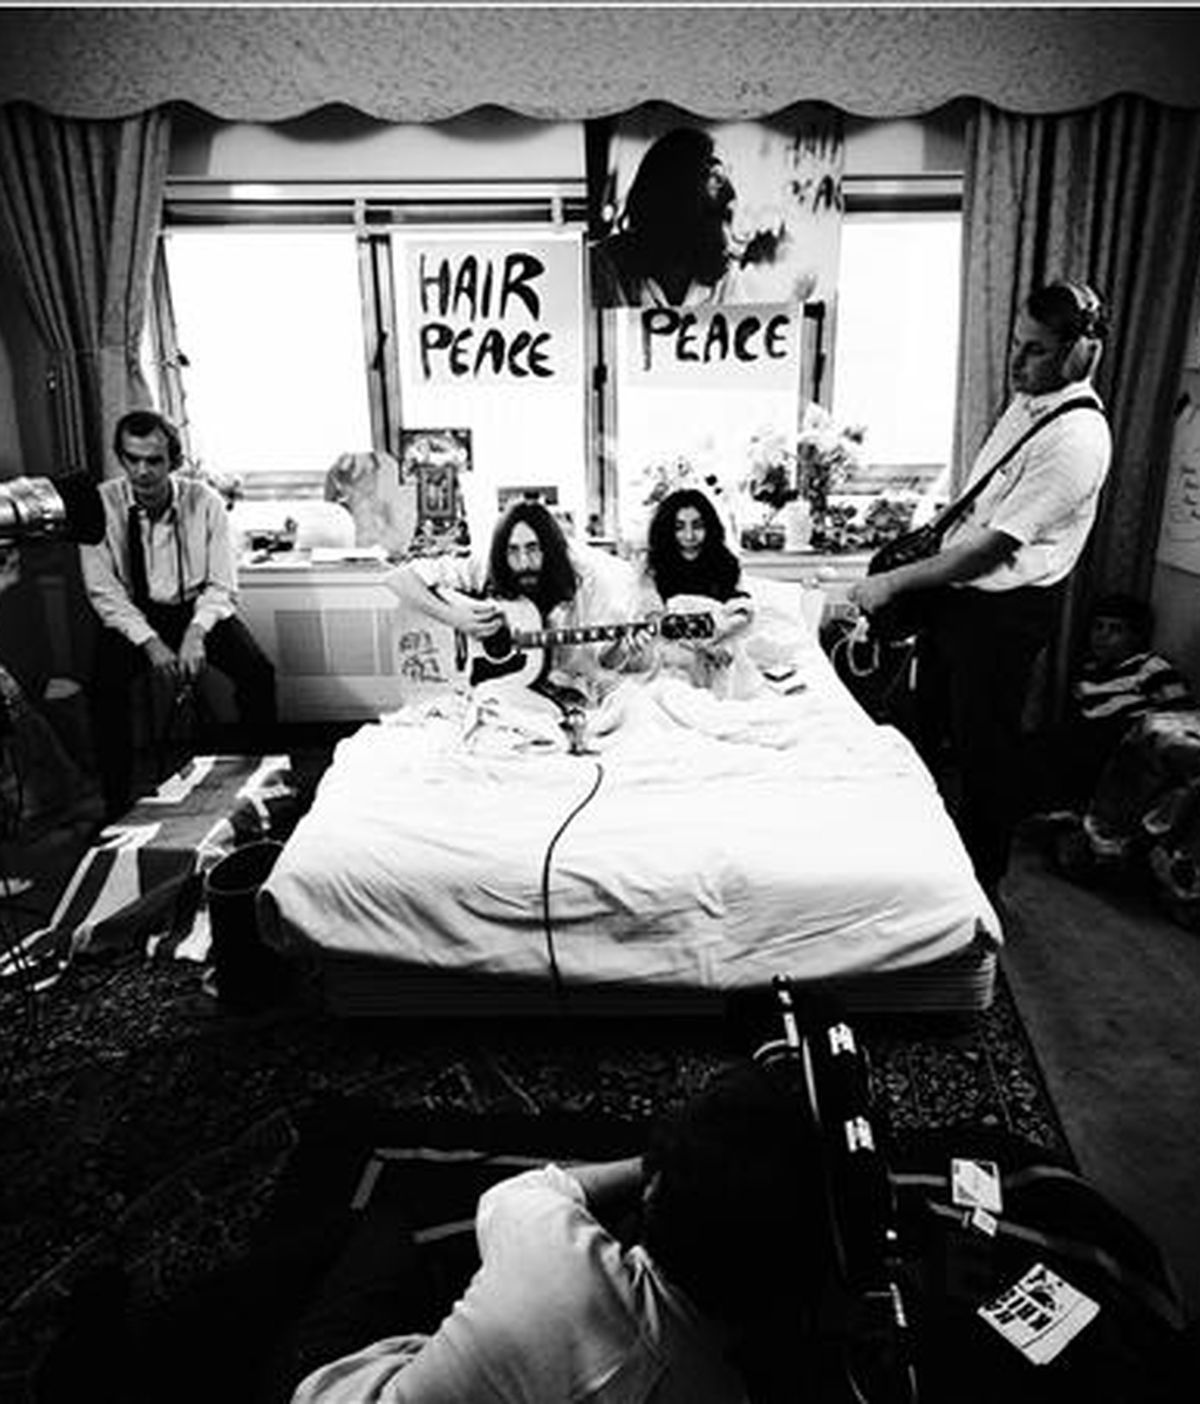 Reproducción de la foto titulada "En la cama" tomada por Gerry Deiter, donde se ve a Yoko Ono y John Lennon tocando la guitarra acústica en pijama en una cama en un hotel de Montreal en 1969. EFE